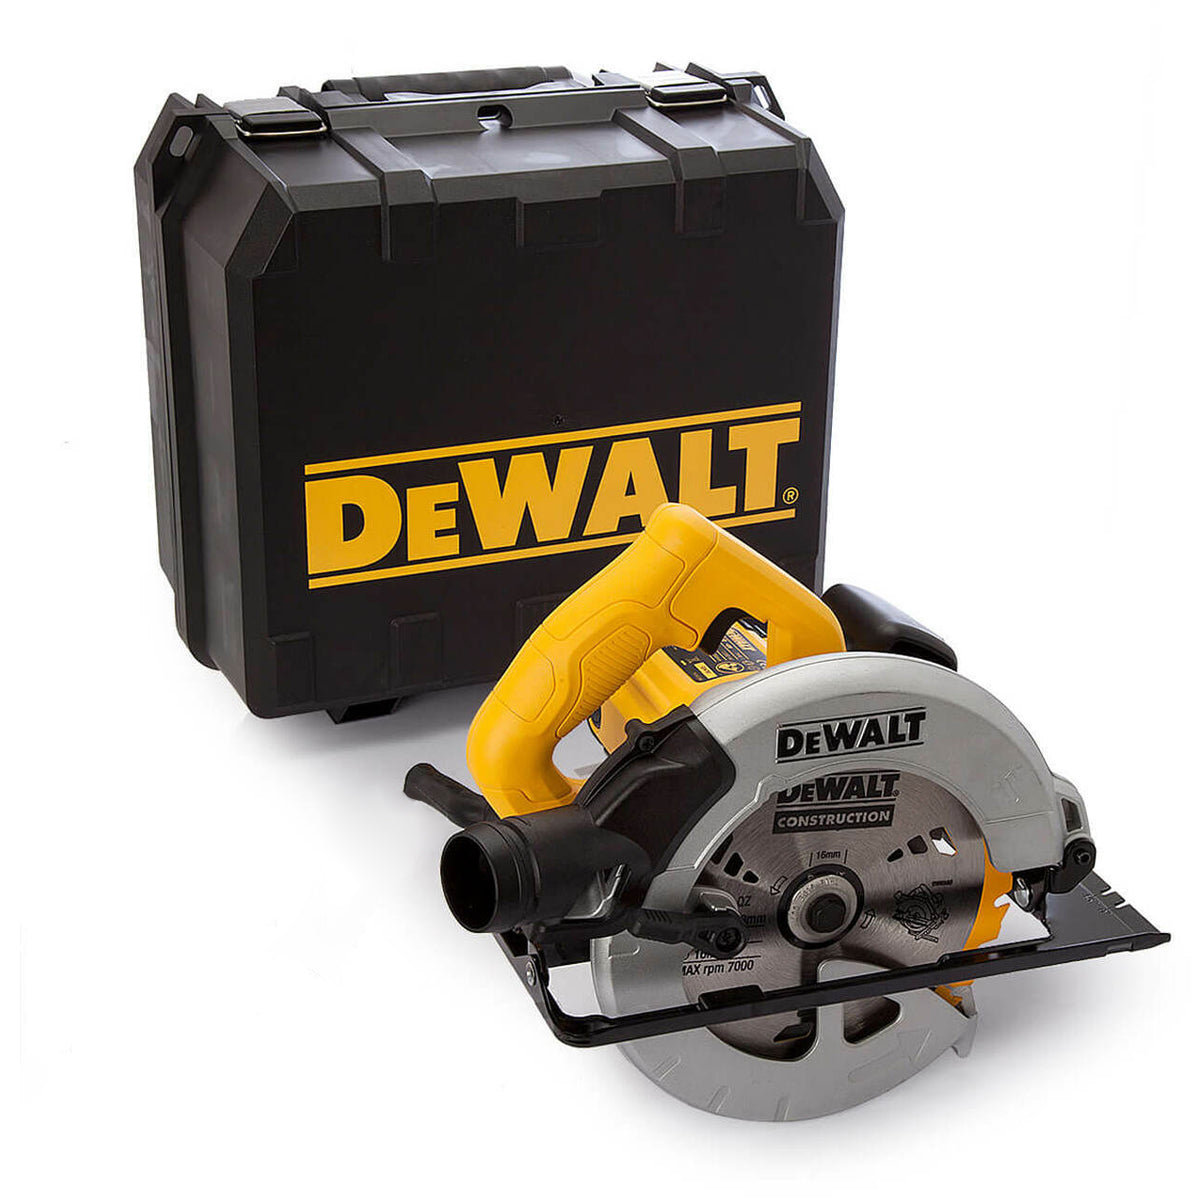 Dewalt DWE560KL 184mm Compact Circular Saw In Kitbox 110V